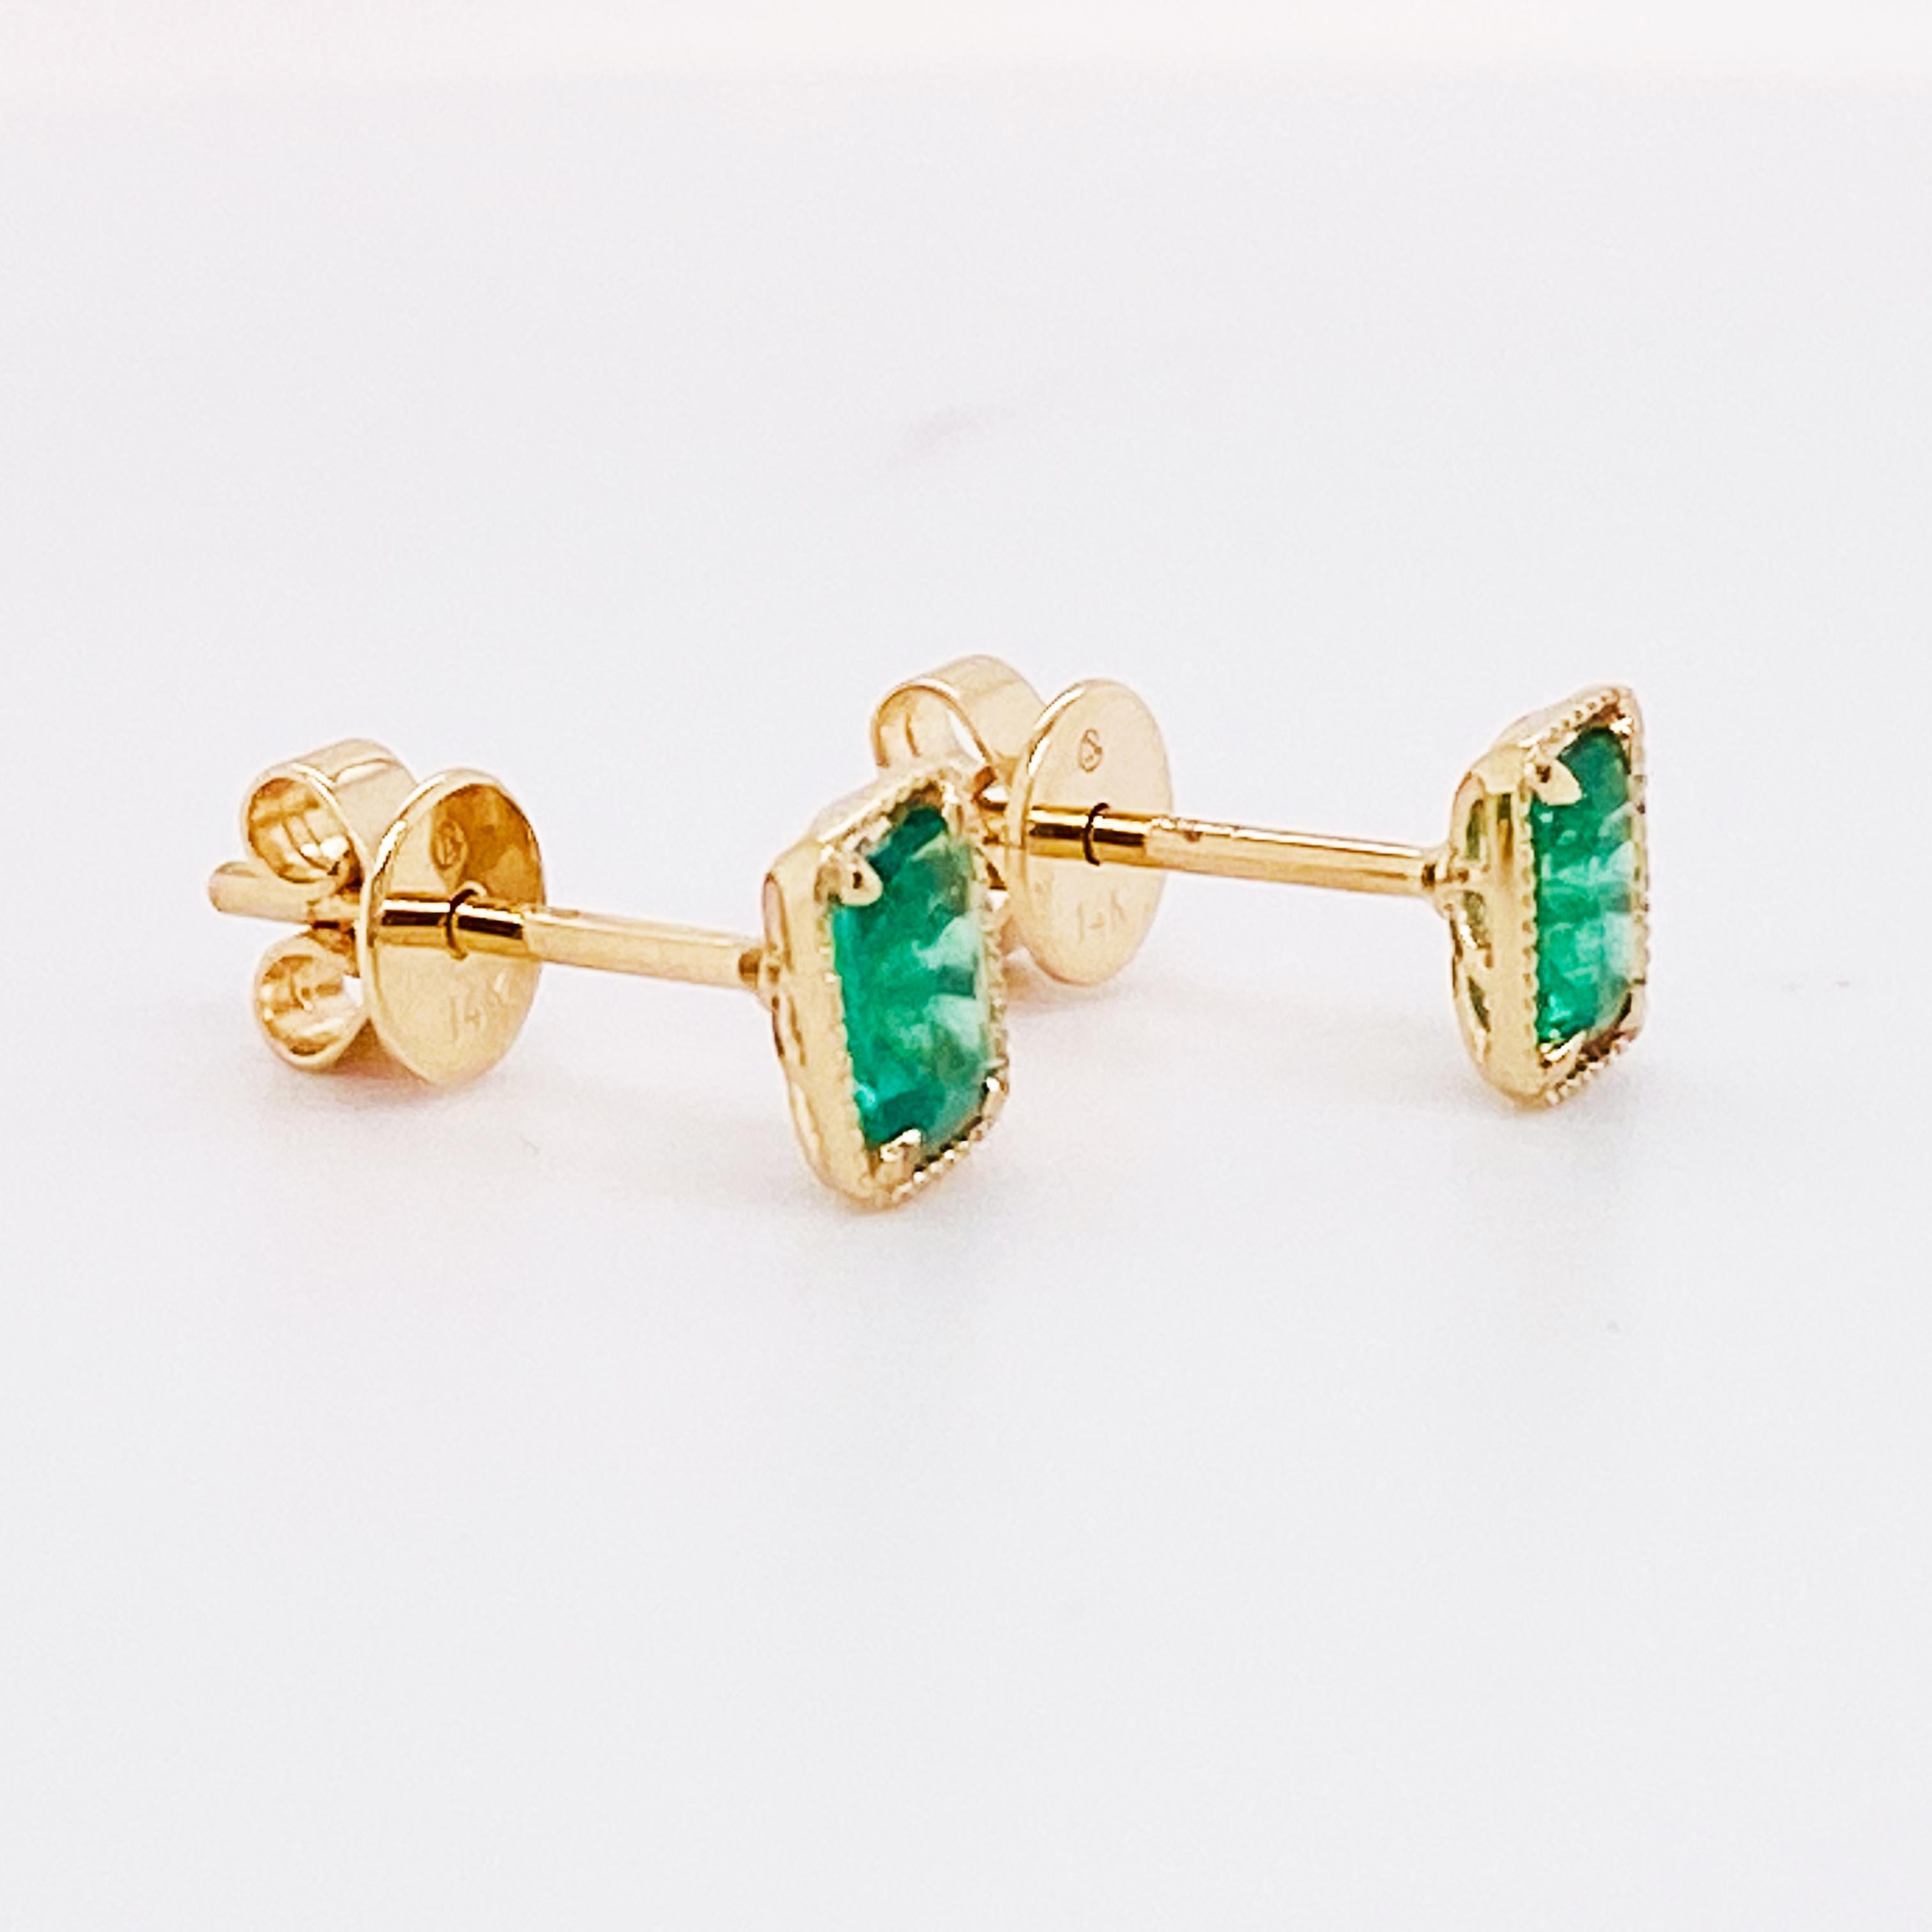 Emerald Cut Minimalist Emerald Stud Earrings 14K Gold Genuine Green Emeralds Post Earrings For Sale